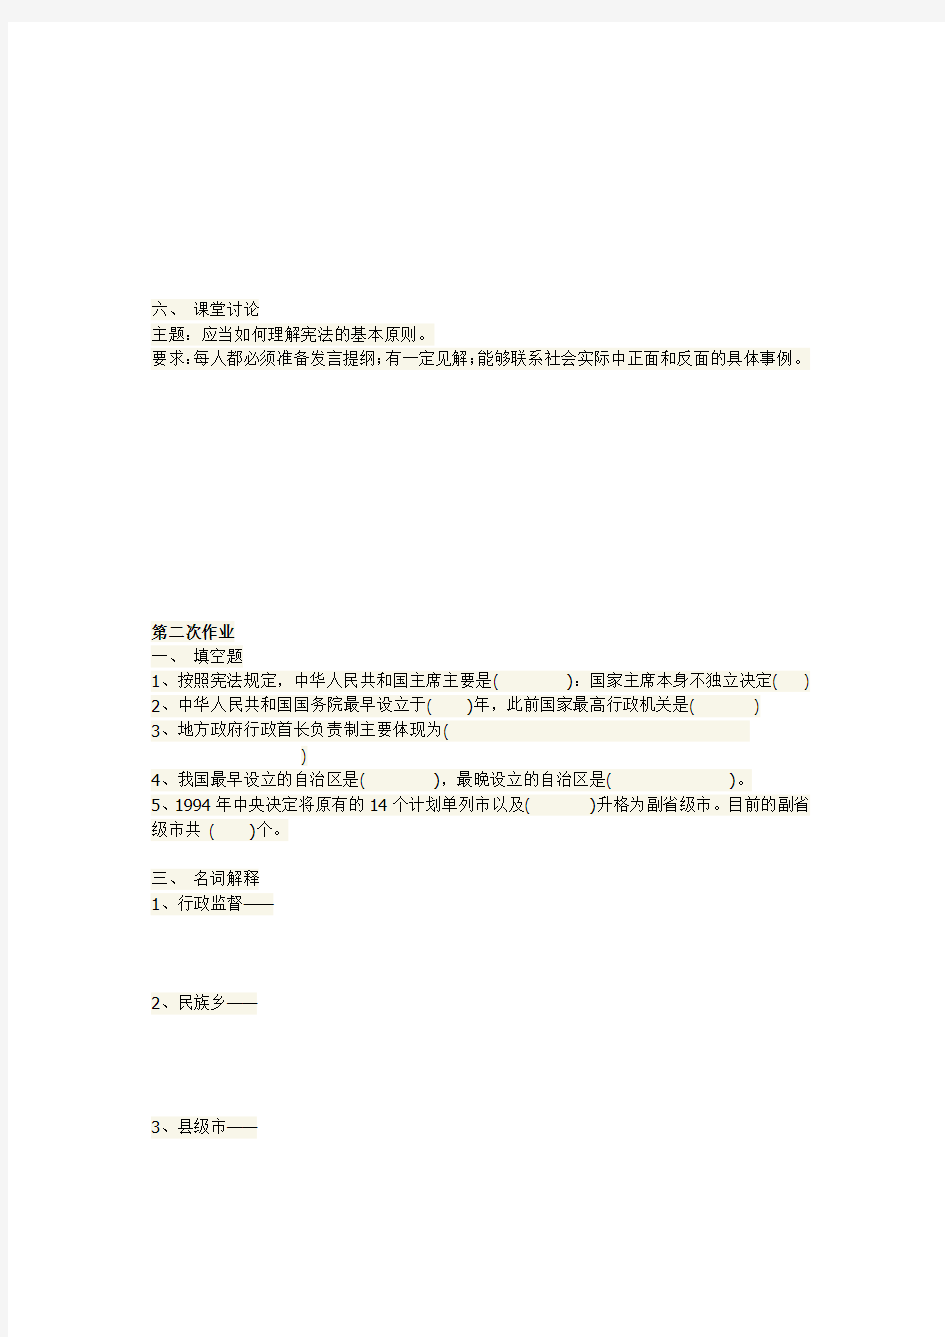 当代中国政治制度  国开开放大学作业答案